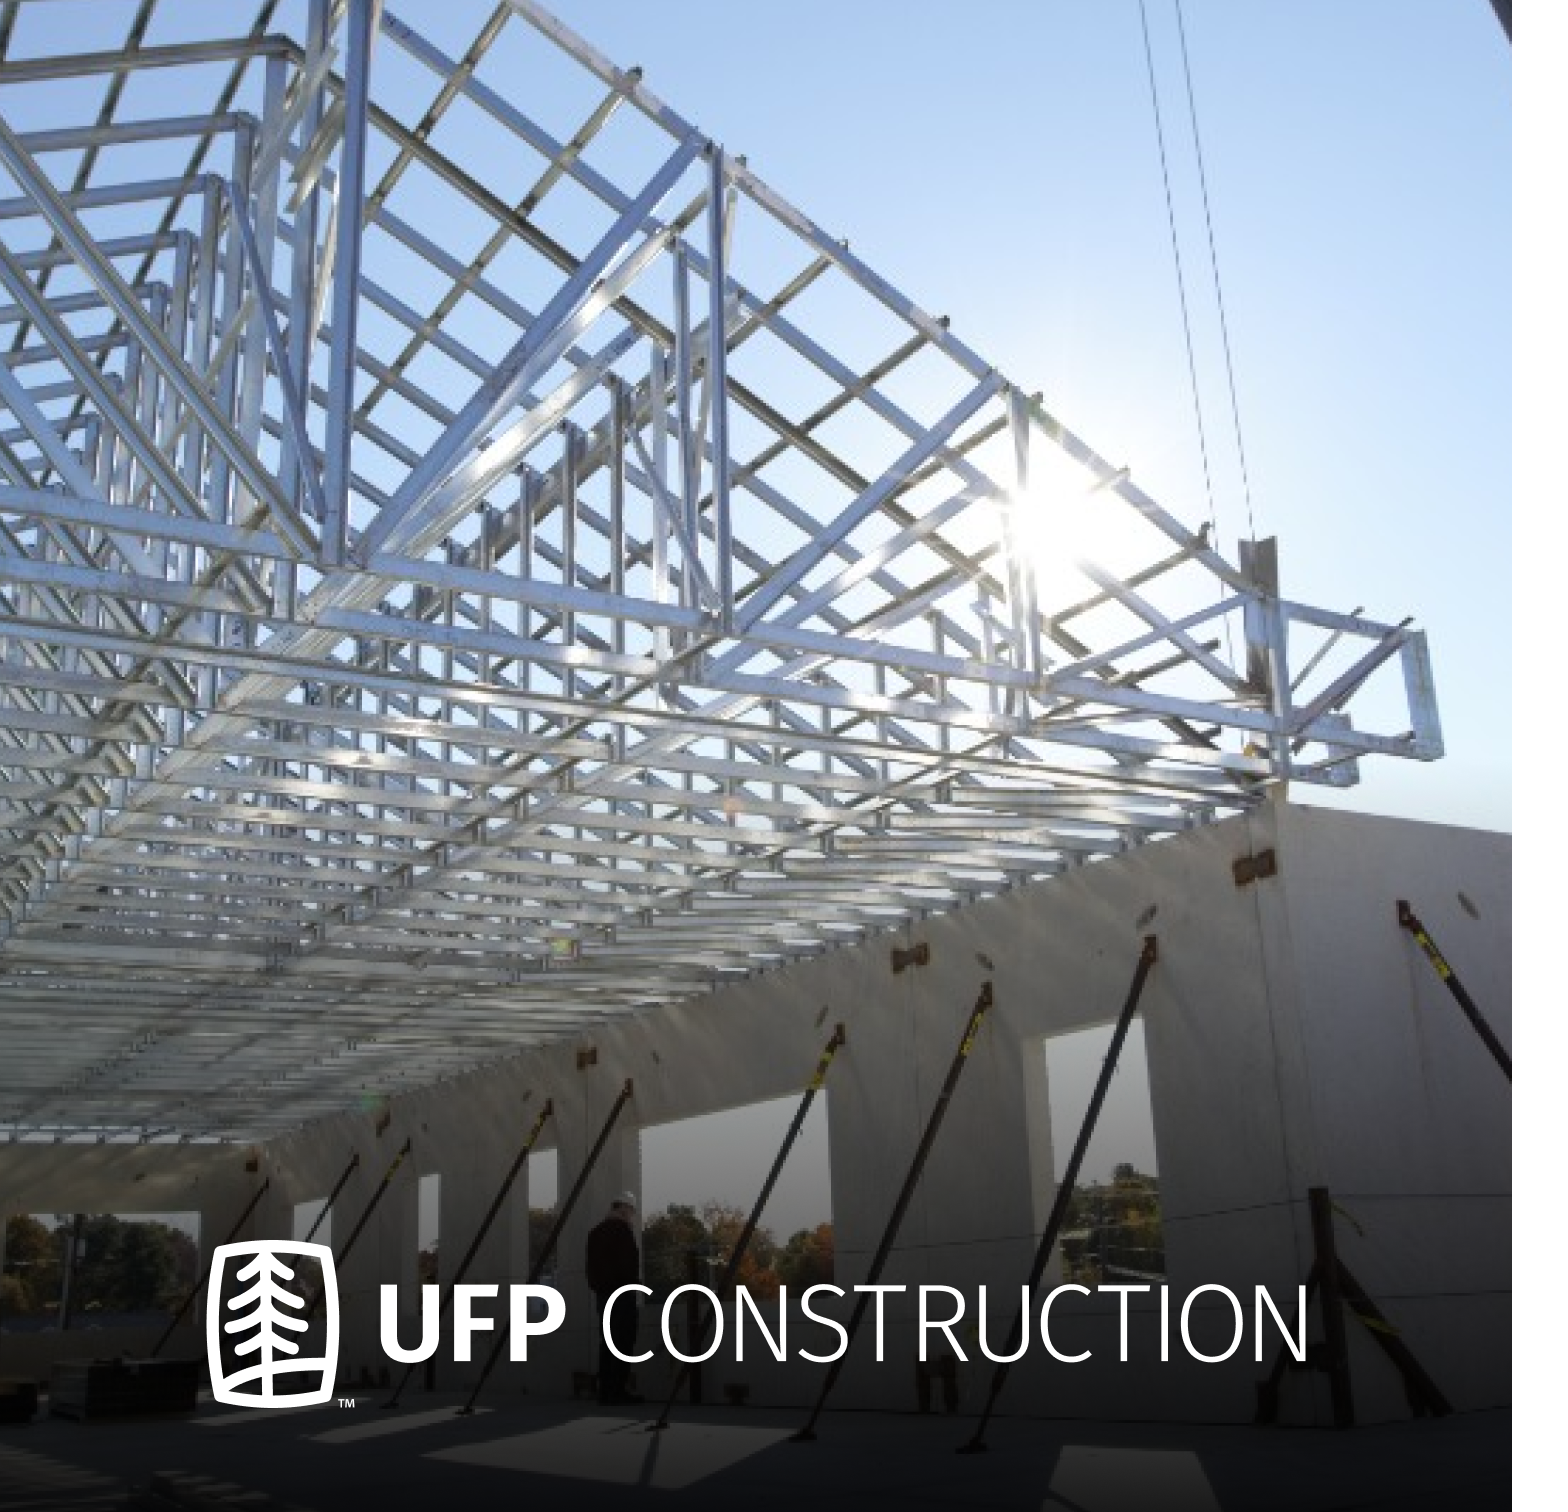 UFP Construction